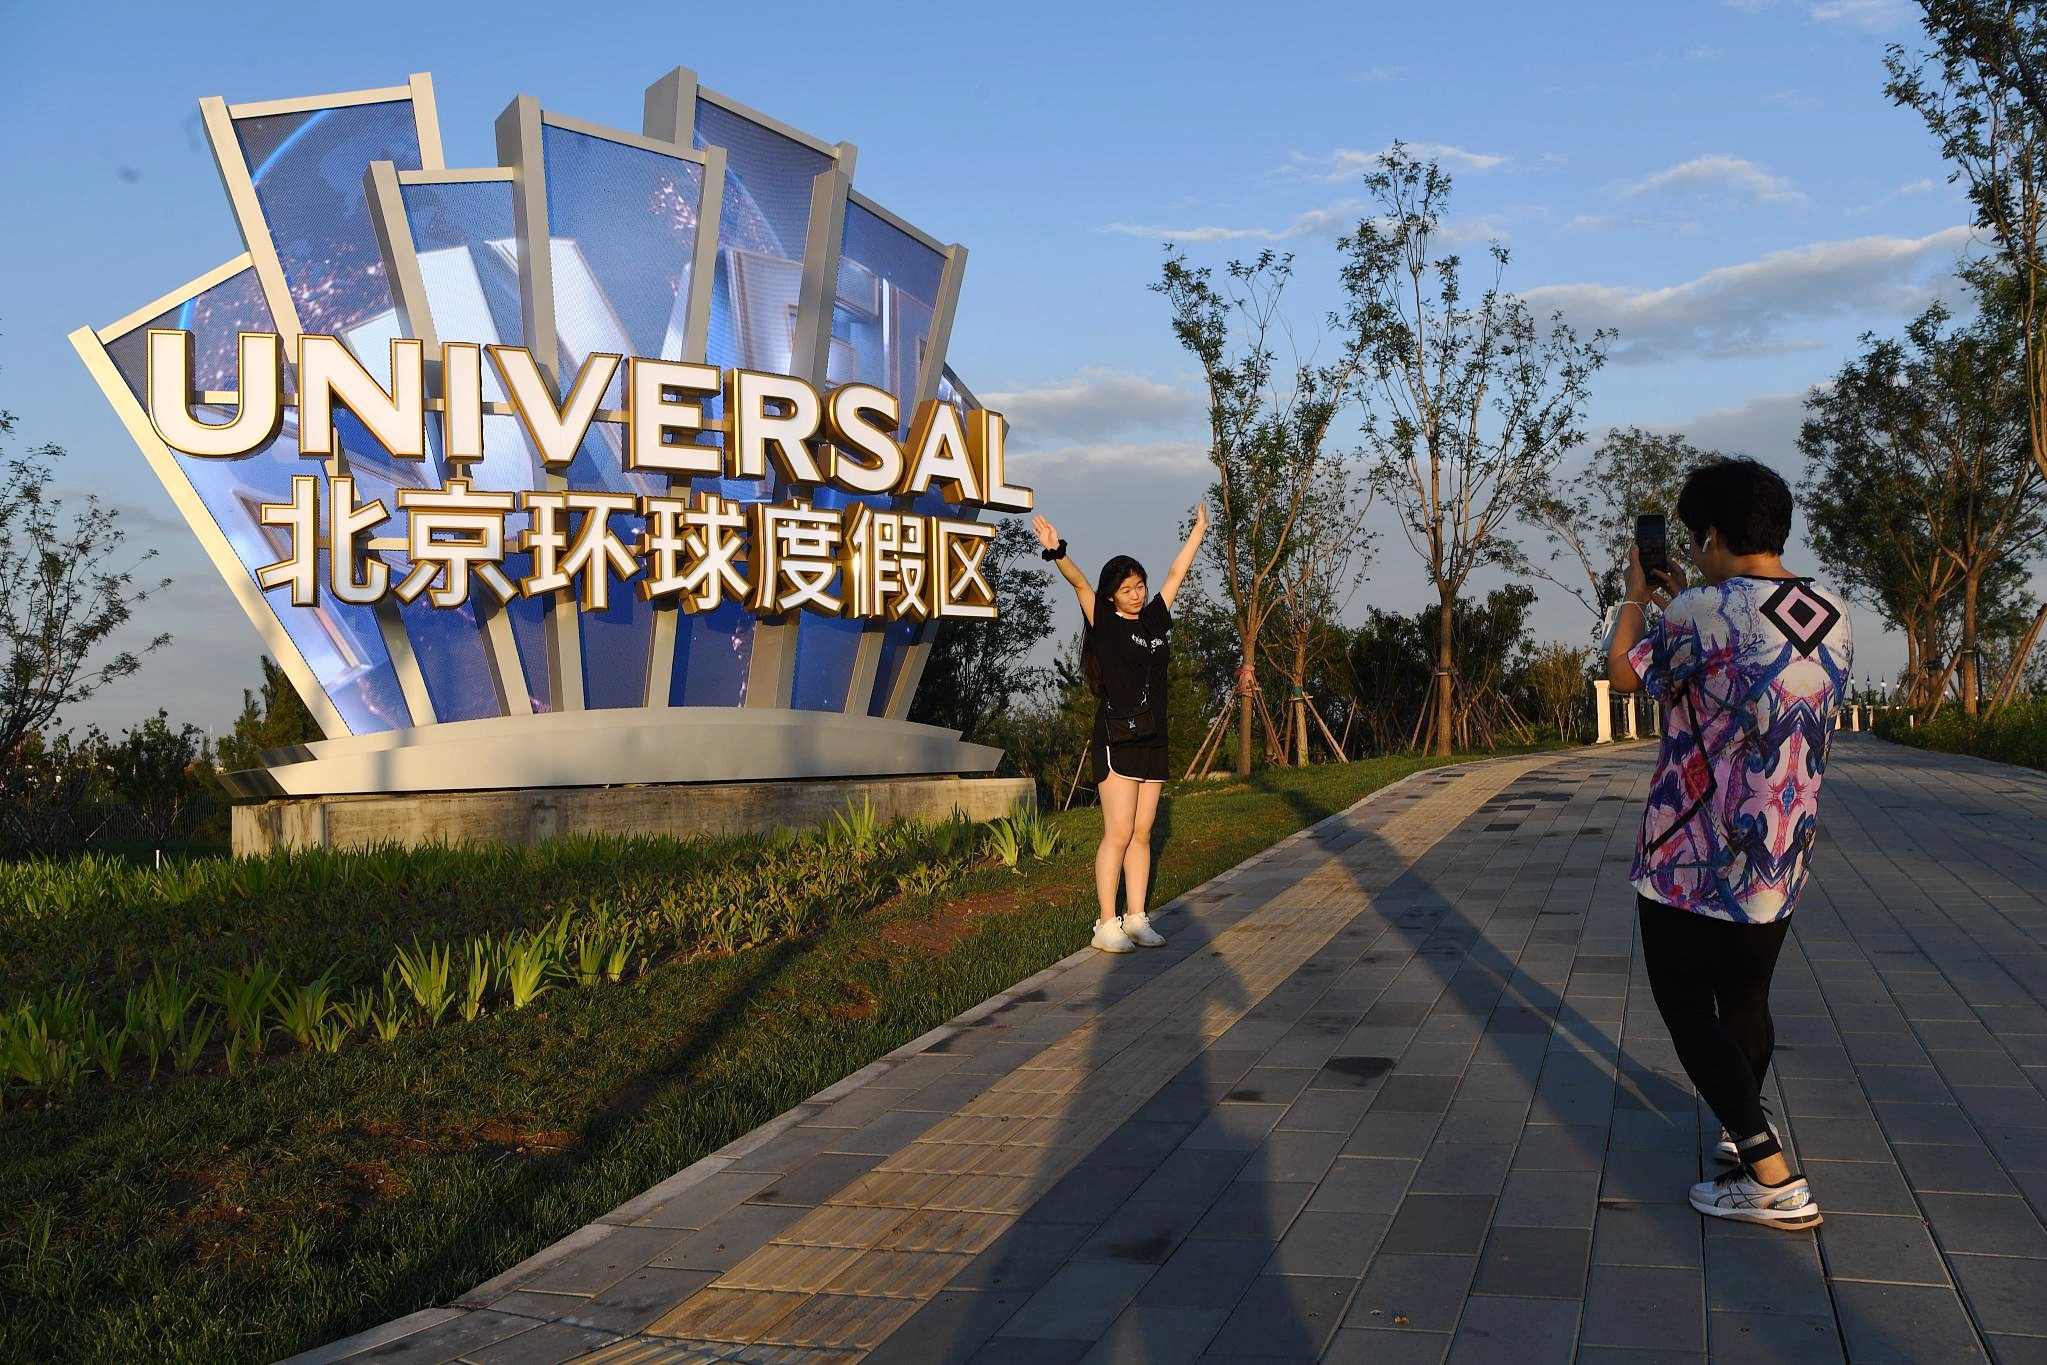 Siêu công viên giải trí lớn nhất thế giới khai trương ở Trung Quốc - 5